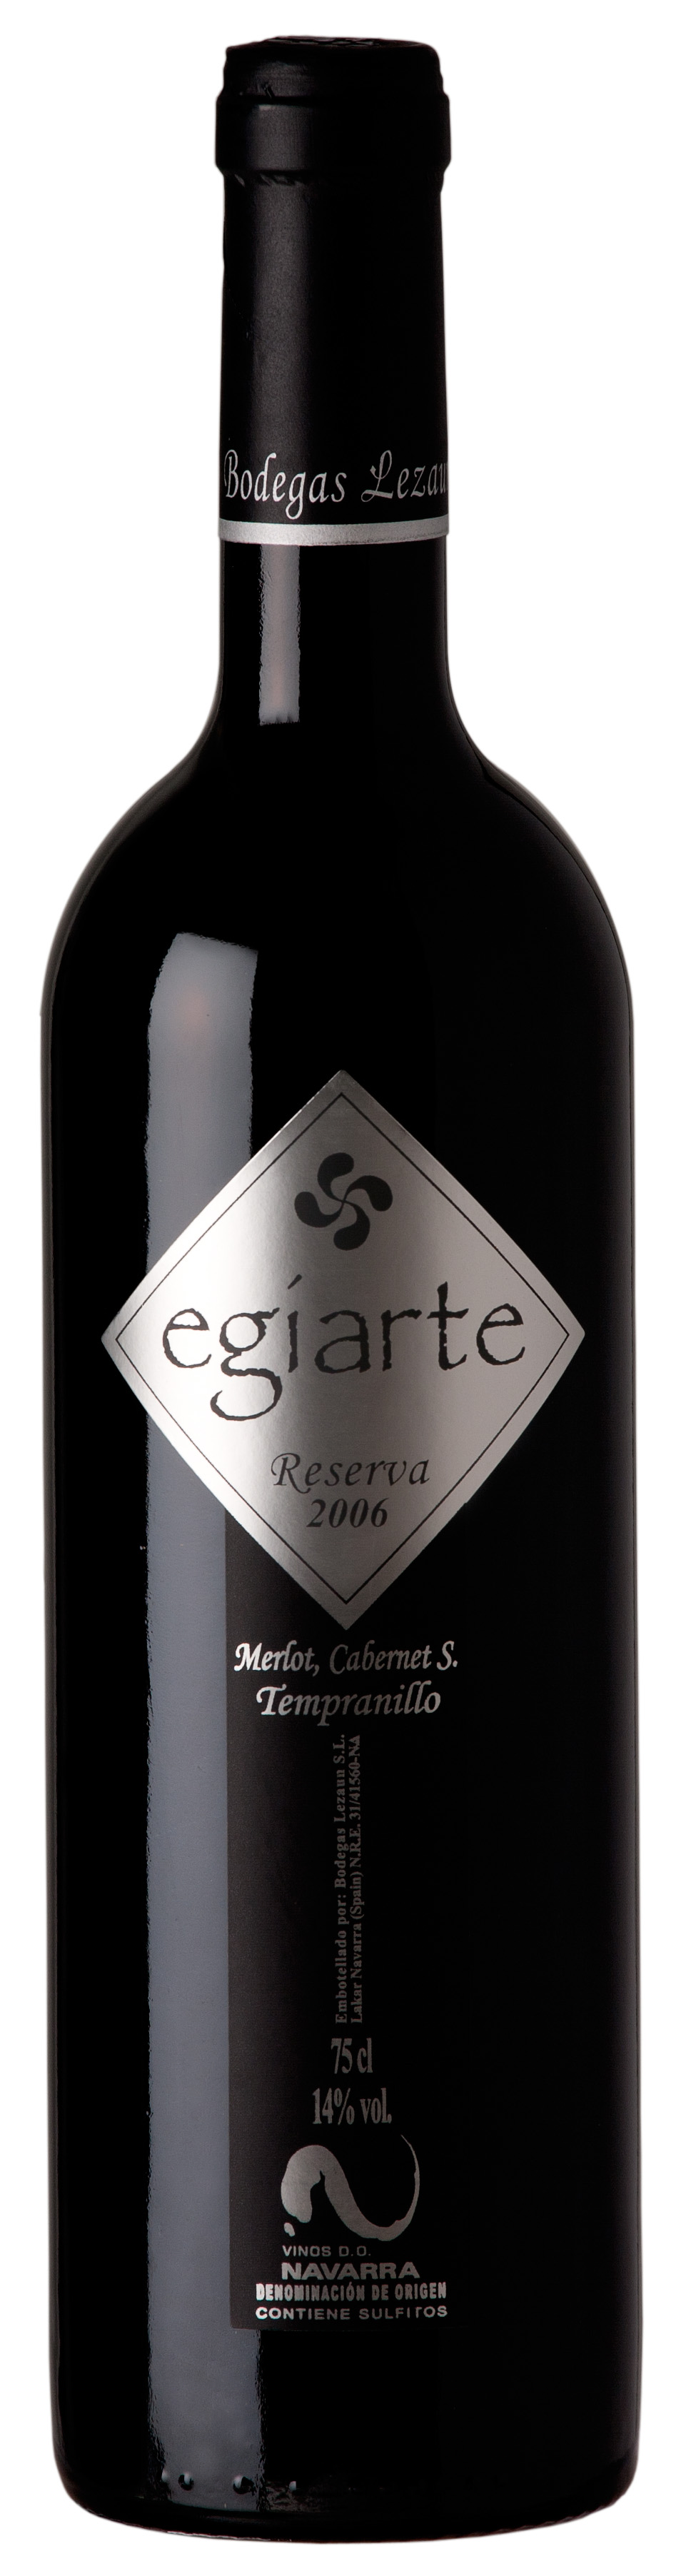 2012 er Egiarte Riserva, DO Navarra (0,75 l)